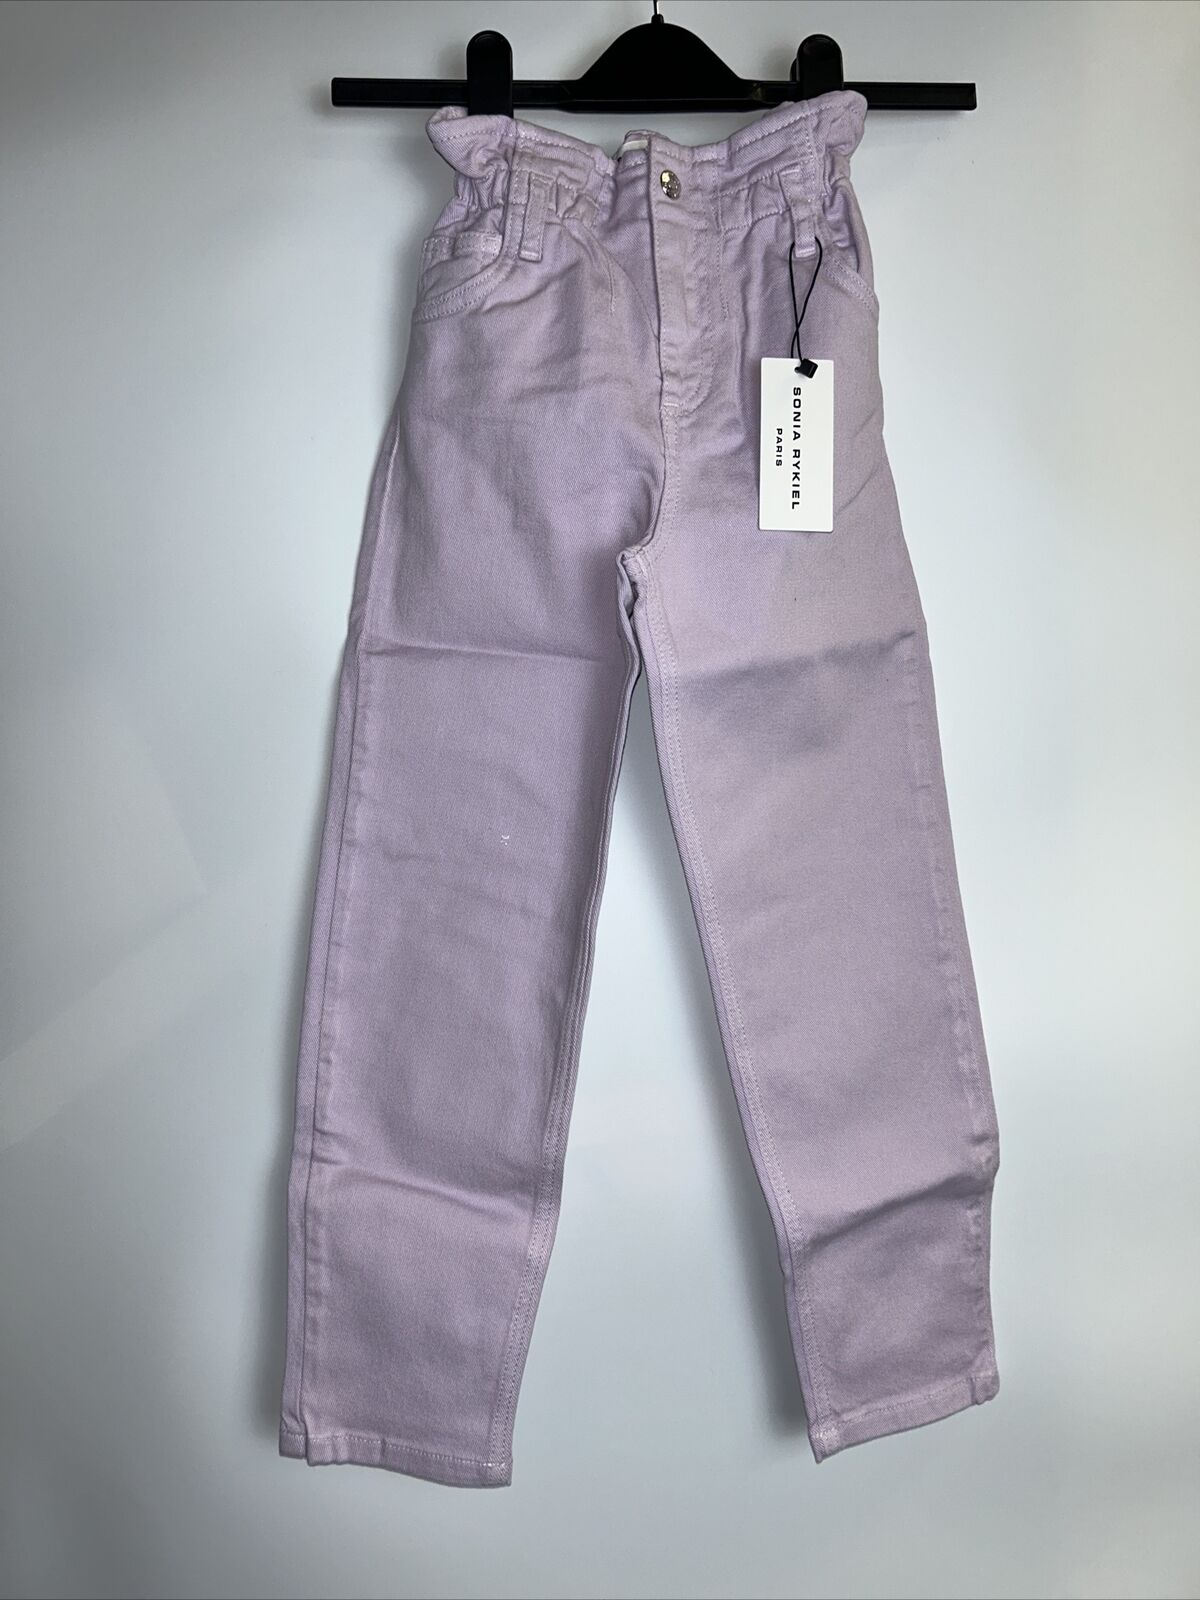 Sonia Rykiel Kids Mahalia Jeans - Lilac. UK 8 Years **** Ref V215